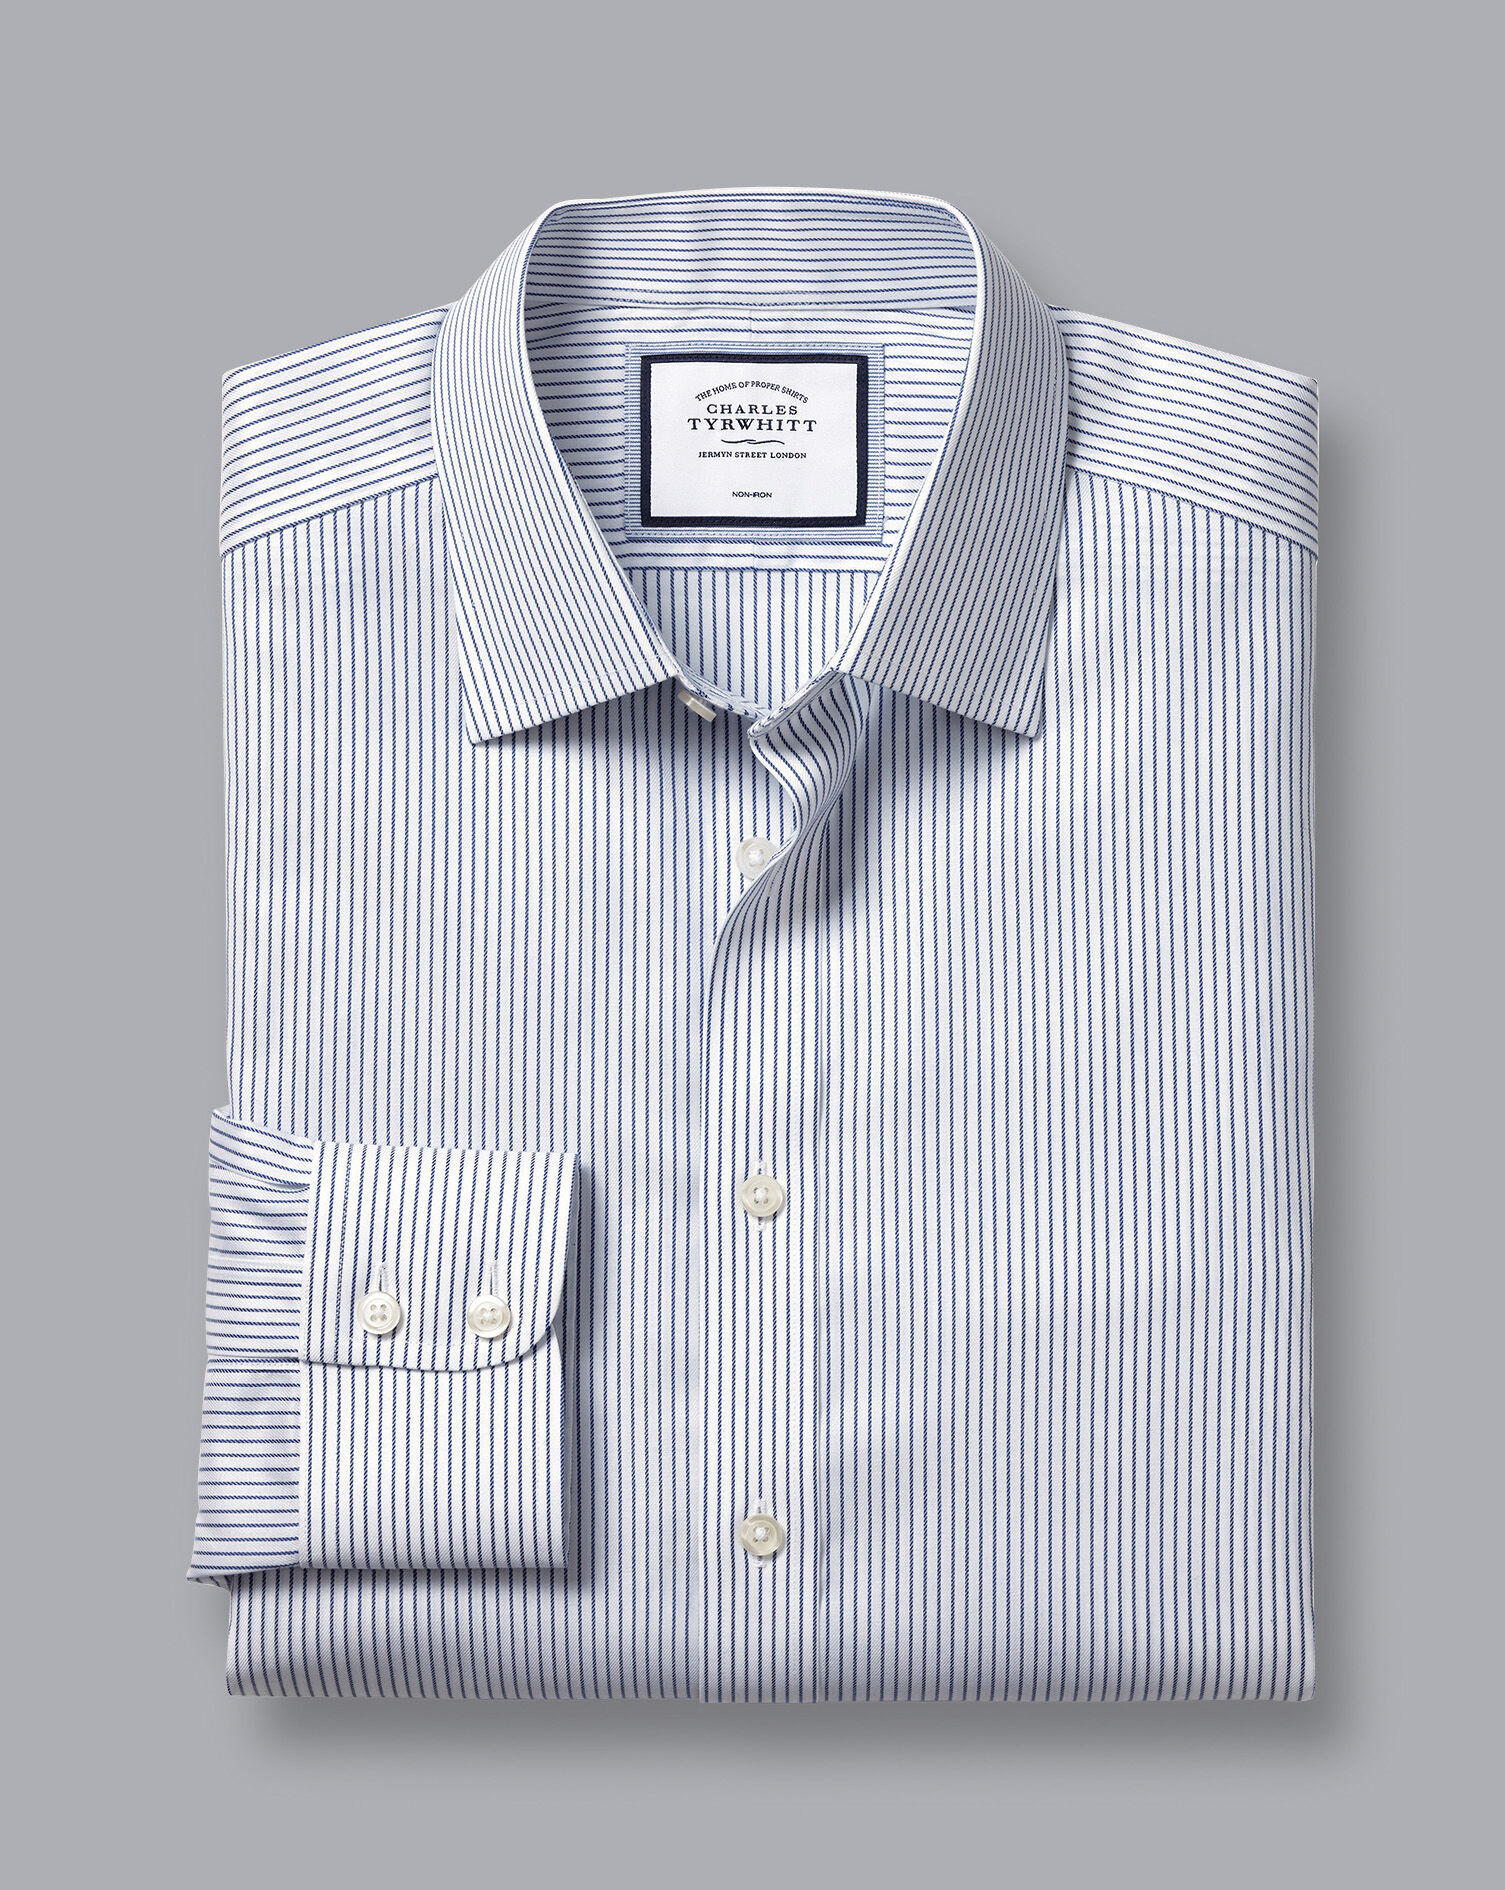 Charles Tyrwhitt Charles Tyrwhitt White and Blue Stripe Shirt 15.5 